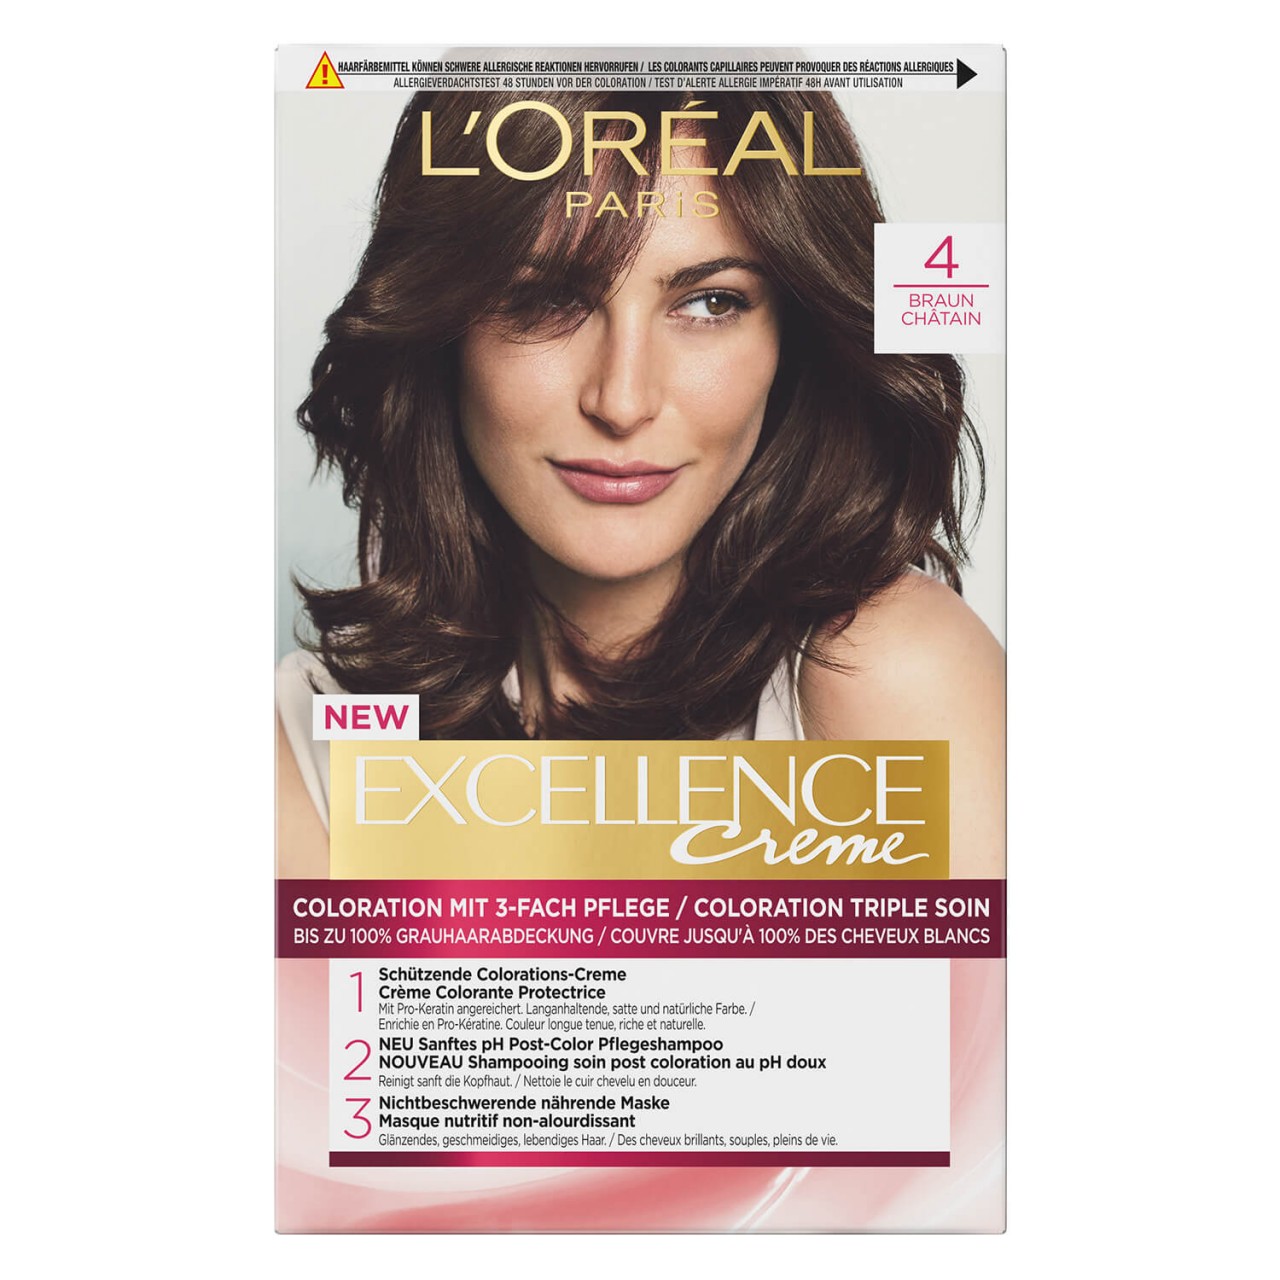 LOréal Excellence Color - Creme 4 Braun von L'Oréal Paris